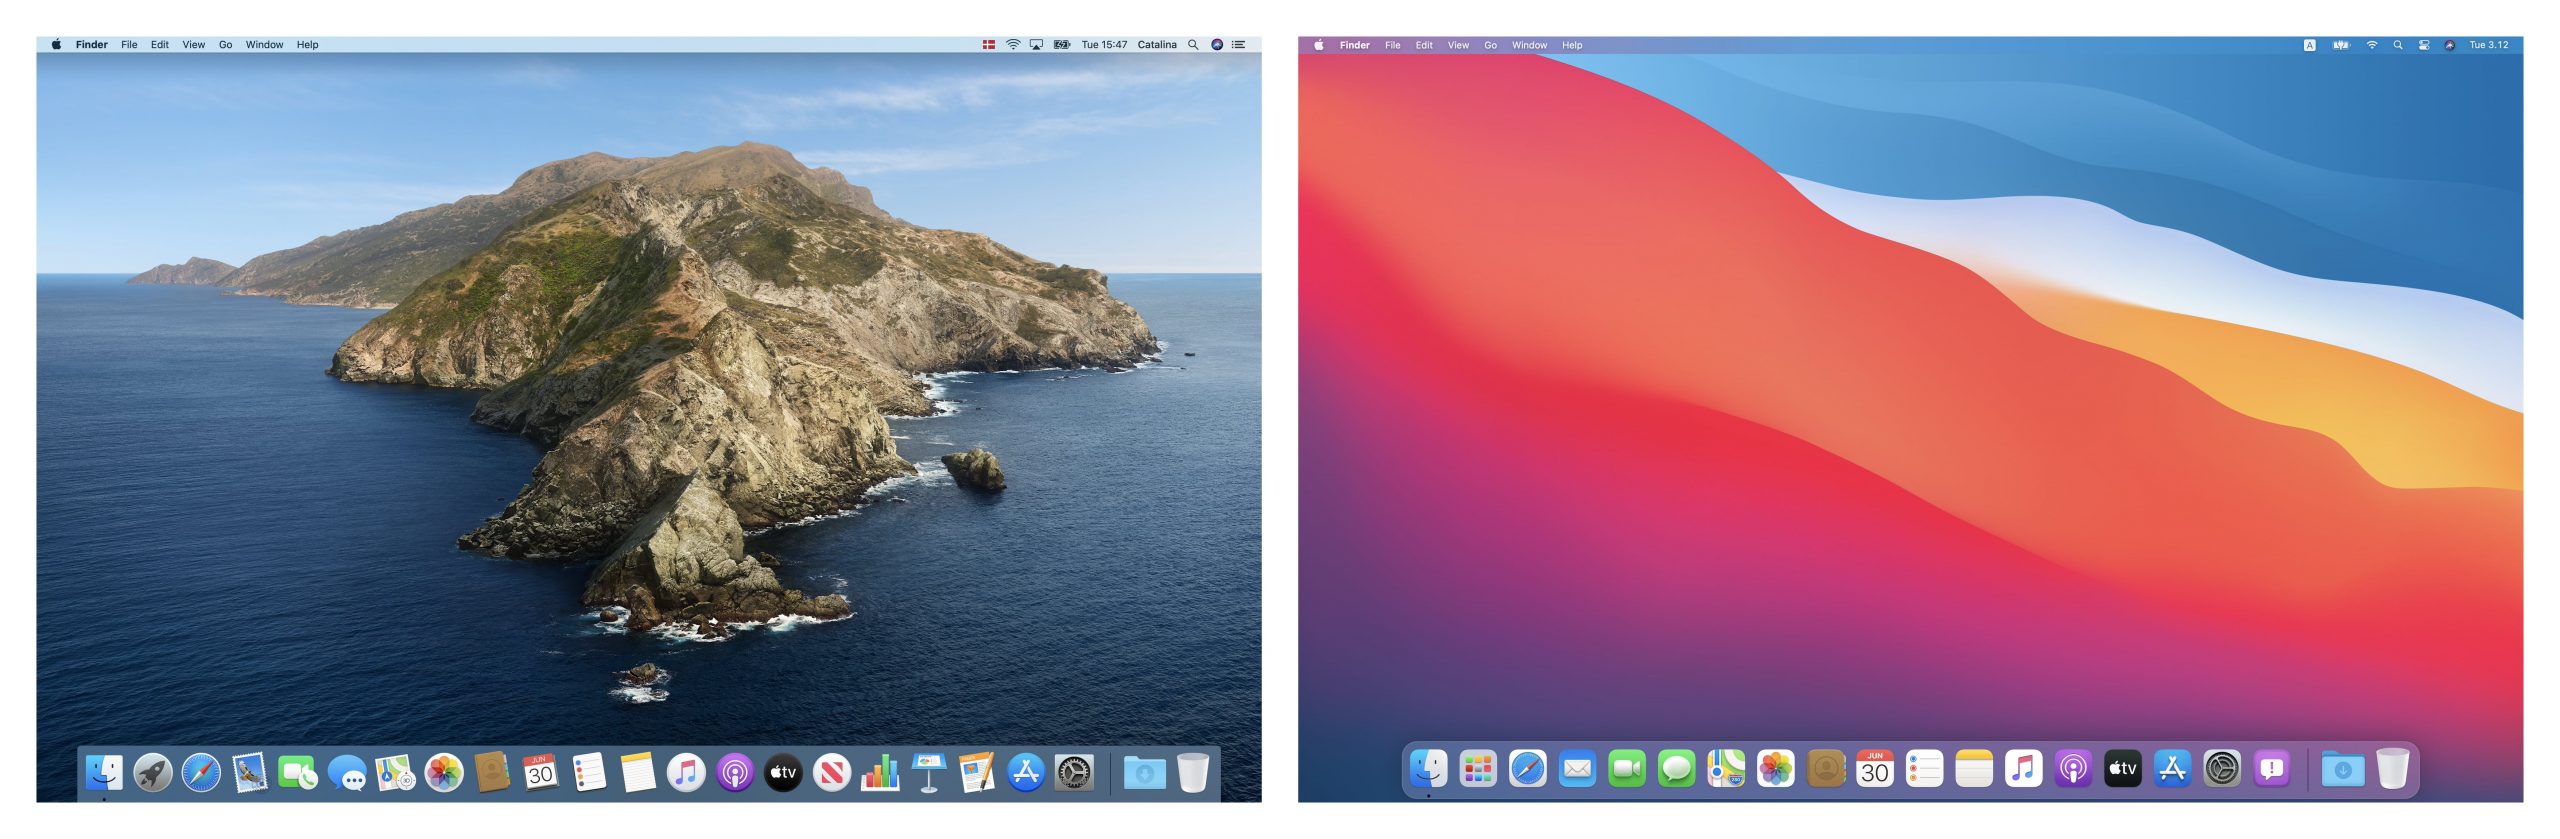 Что нового в macOS Big Sur: сравнение интерфейса с Catalina